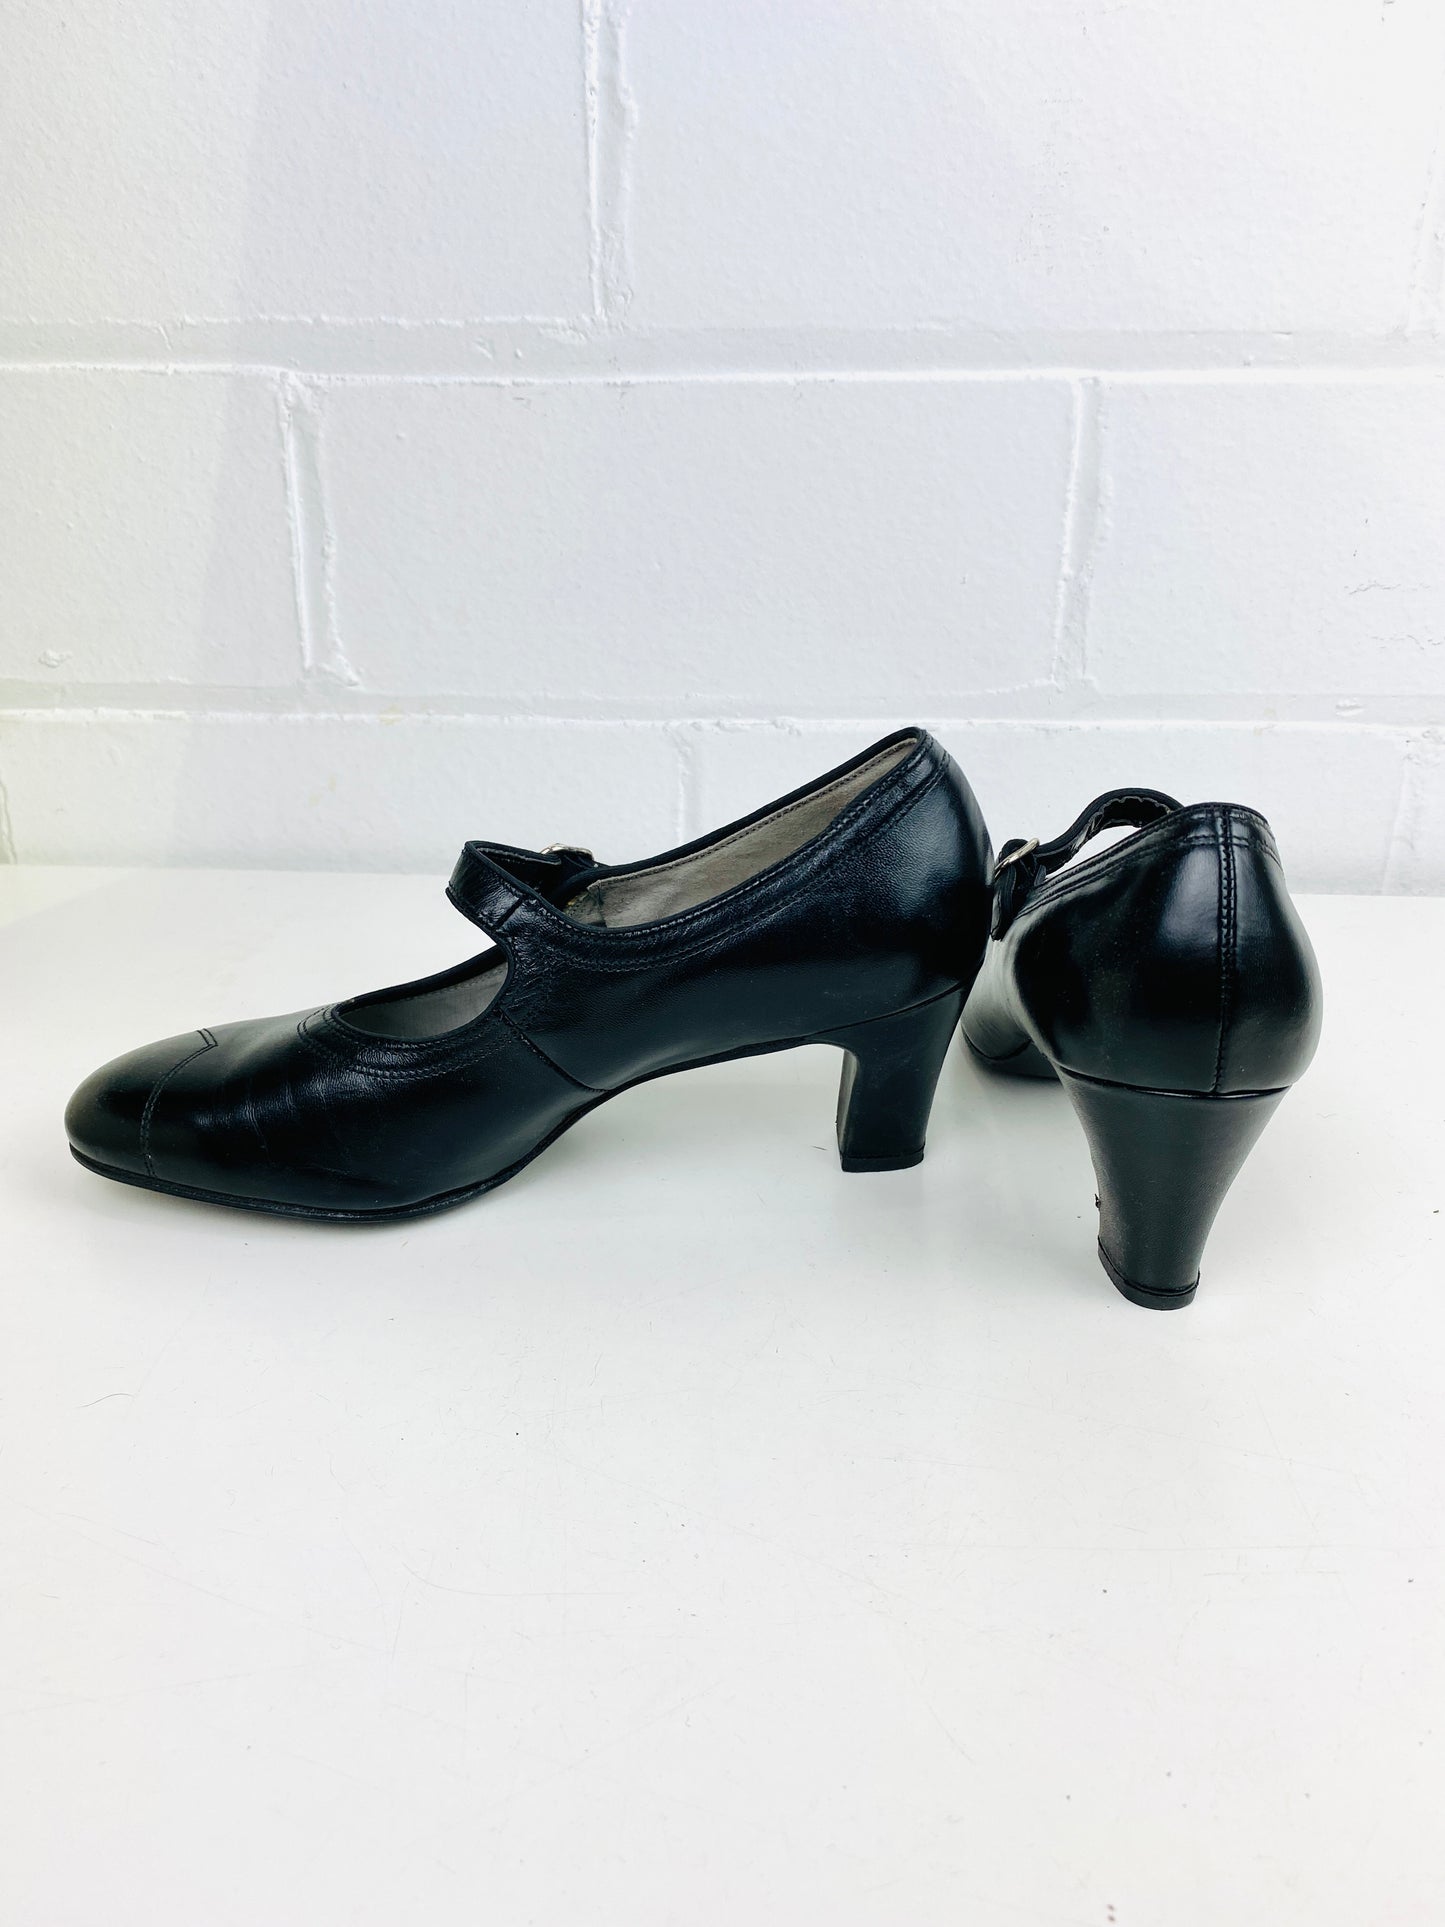 Vintage Deadstock Shoes, Women's 1980s Black Leather Pumps, NOS, 7088